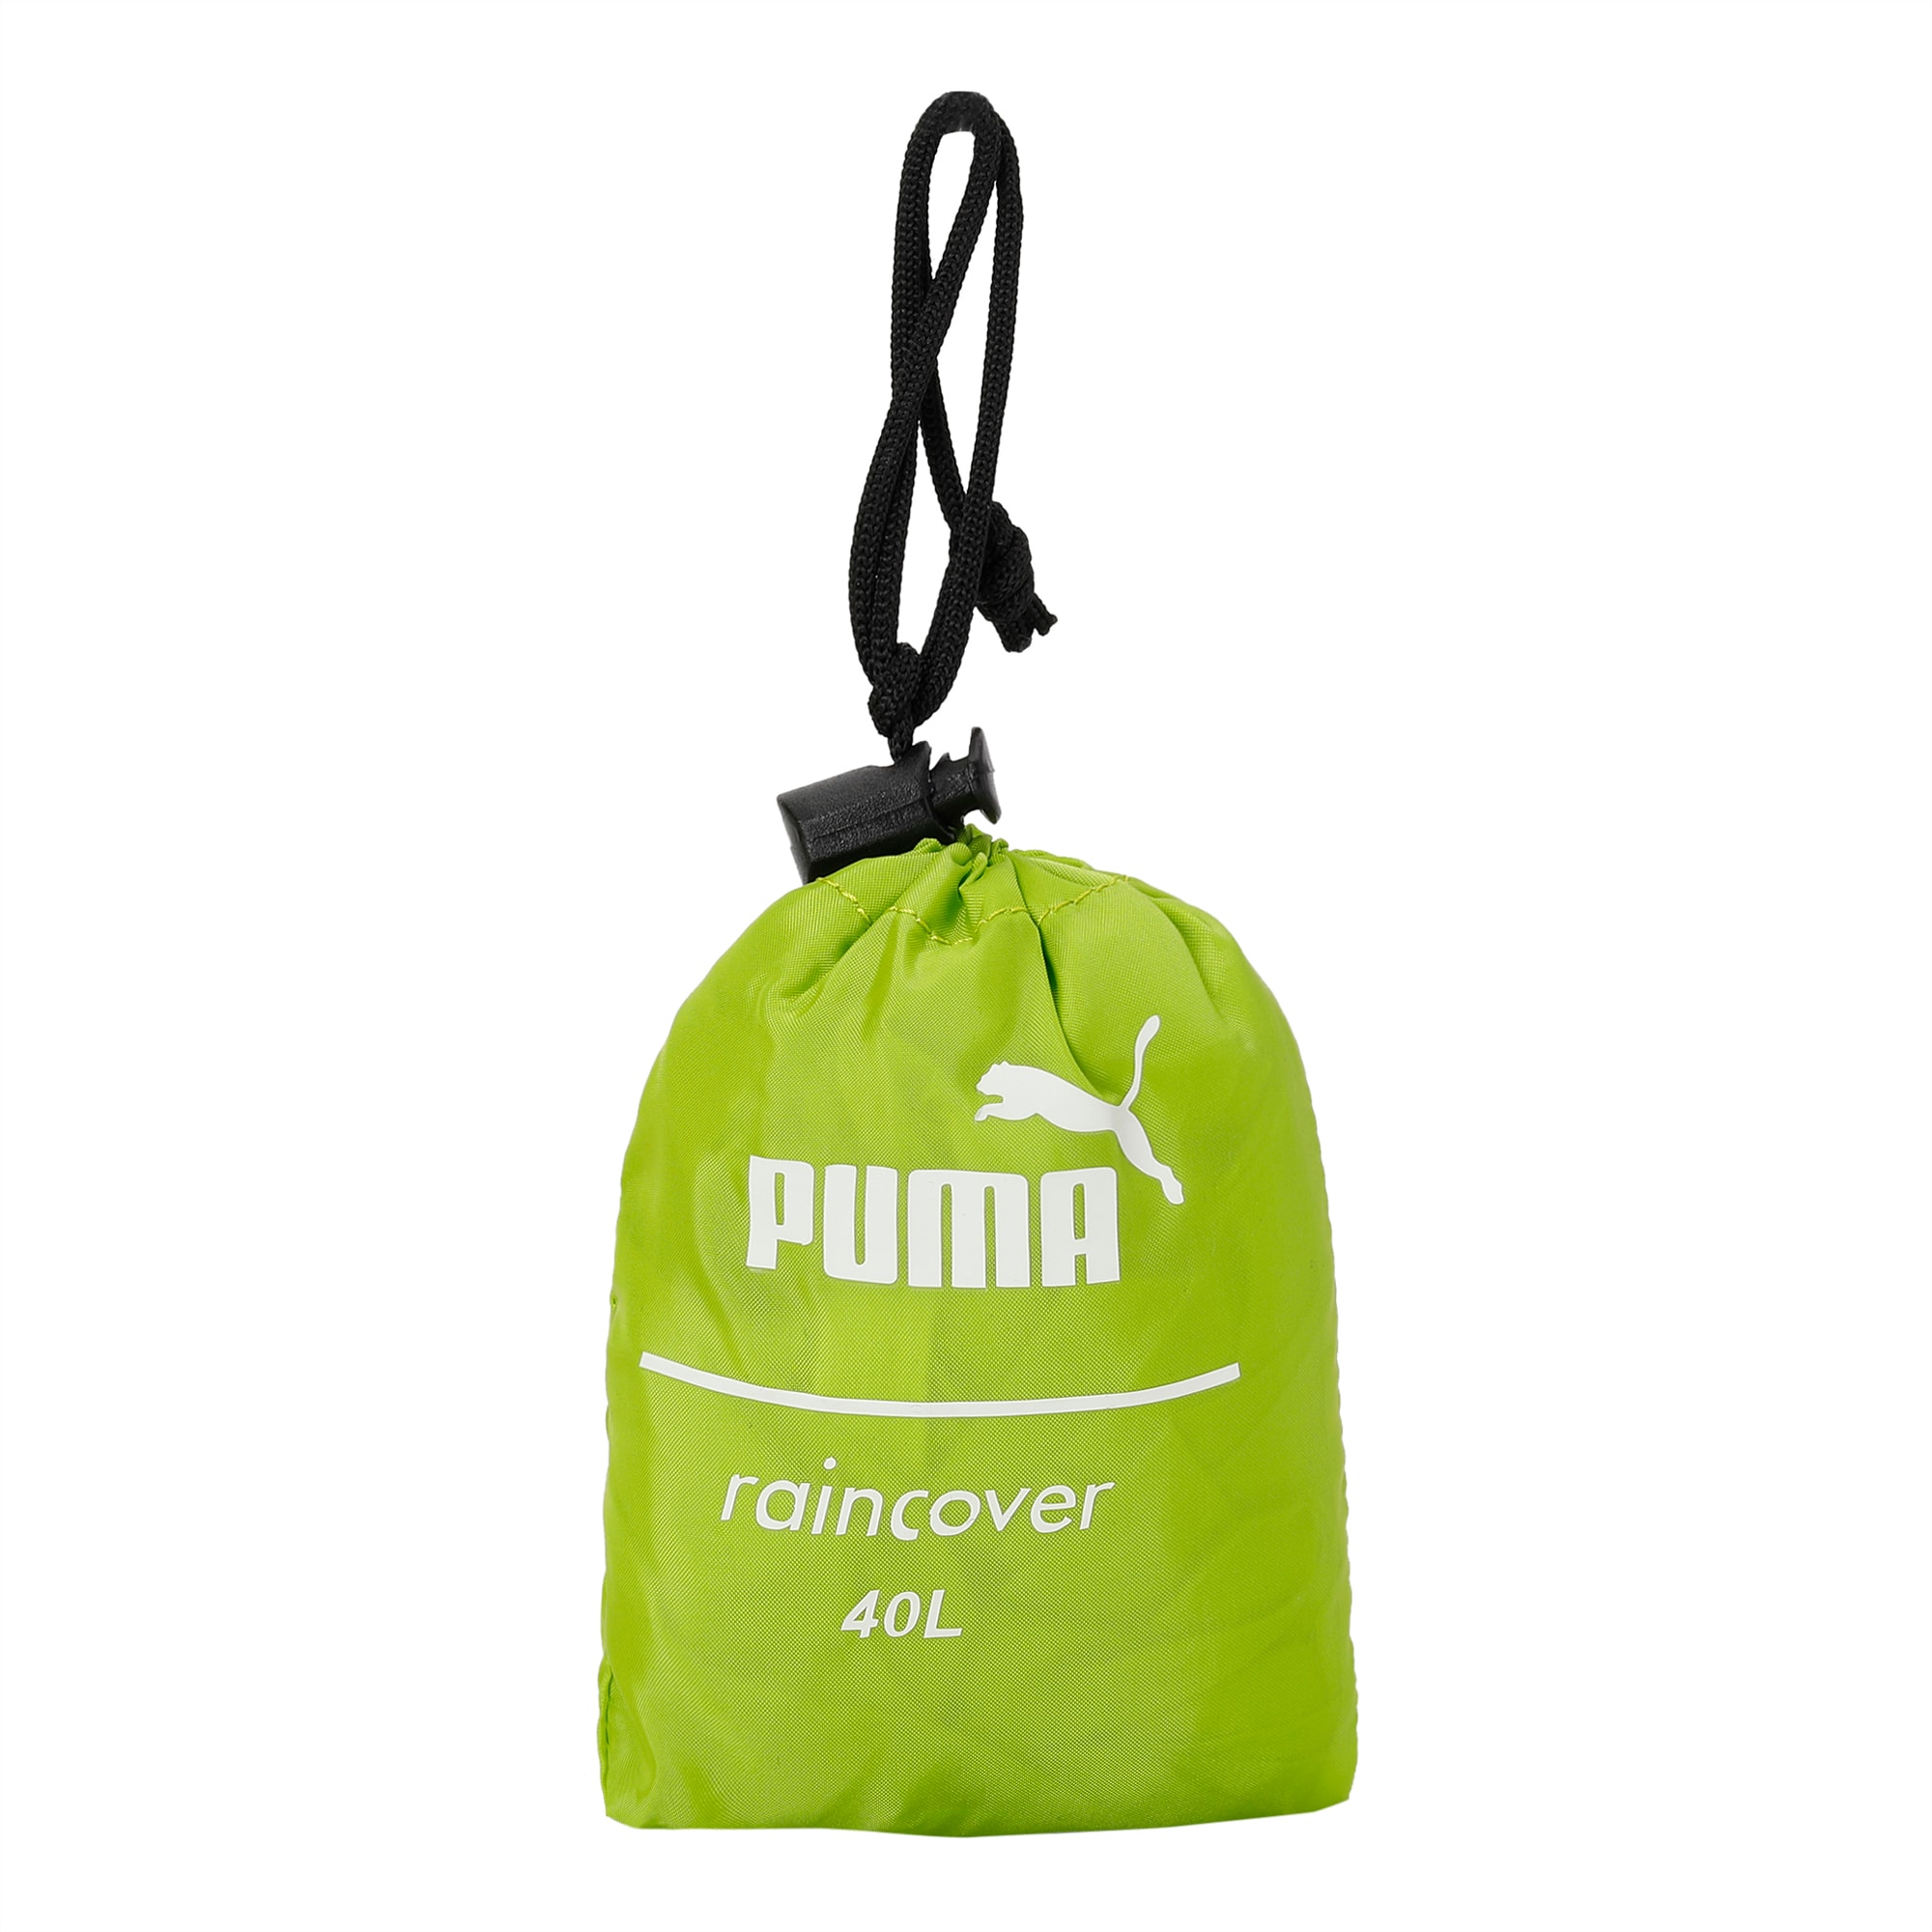 puma bag rain cover